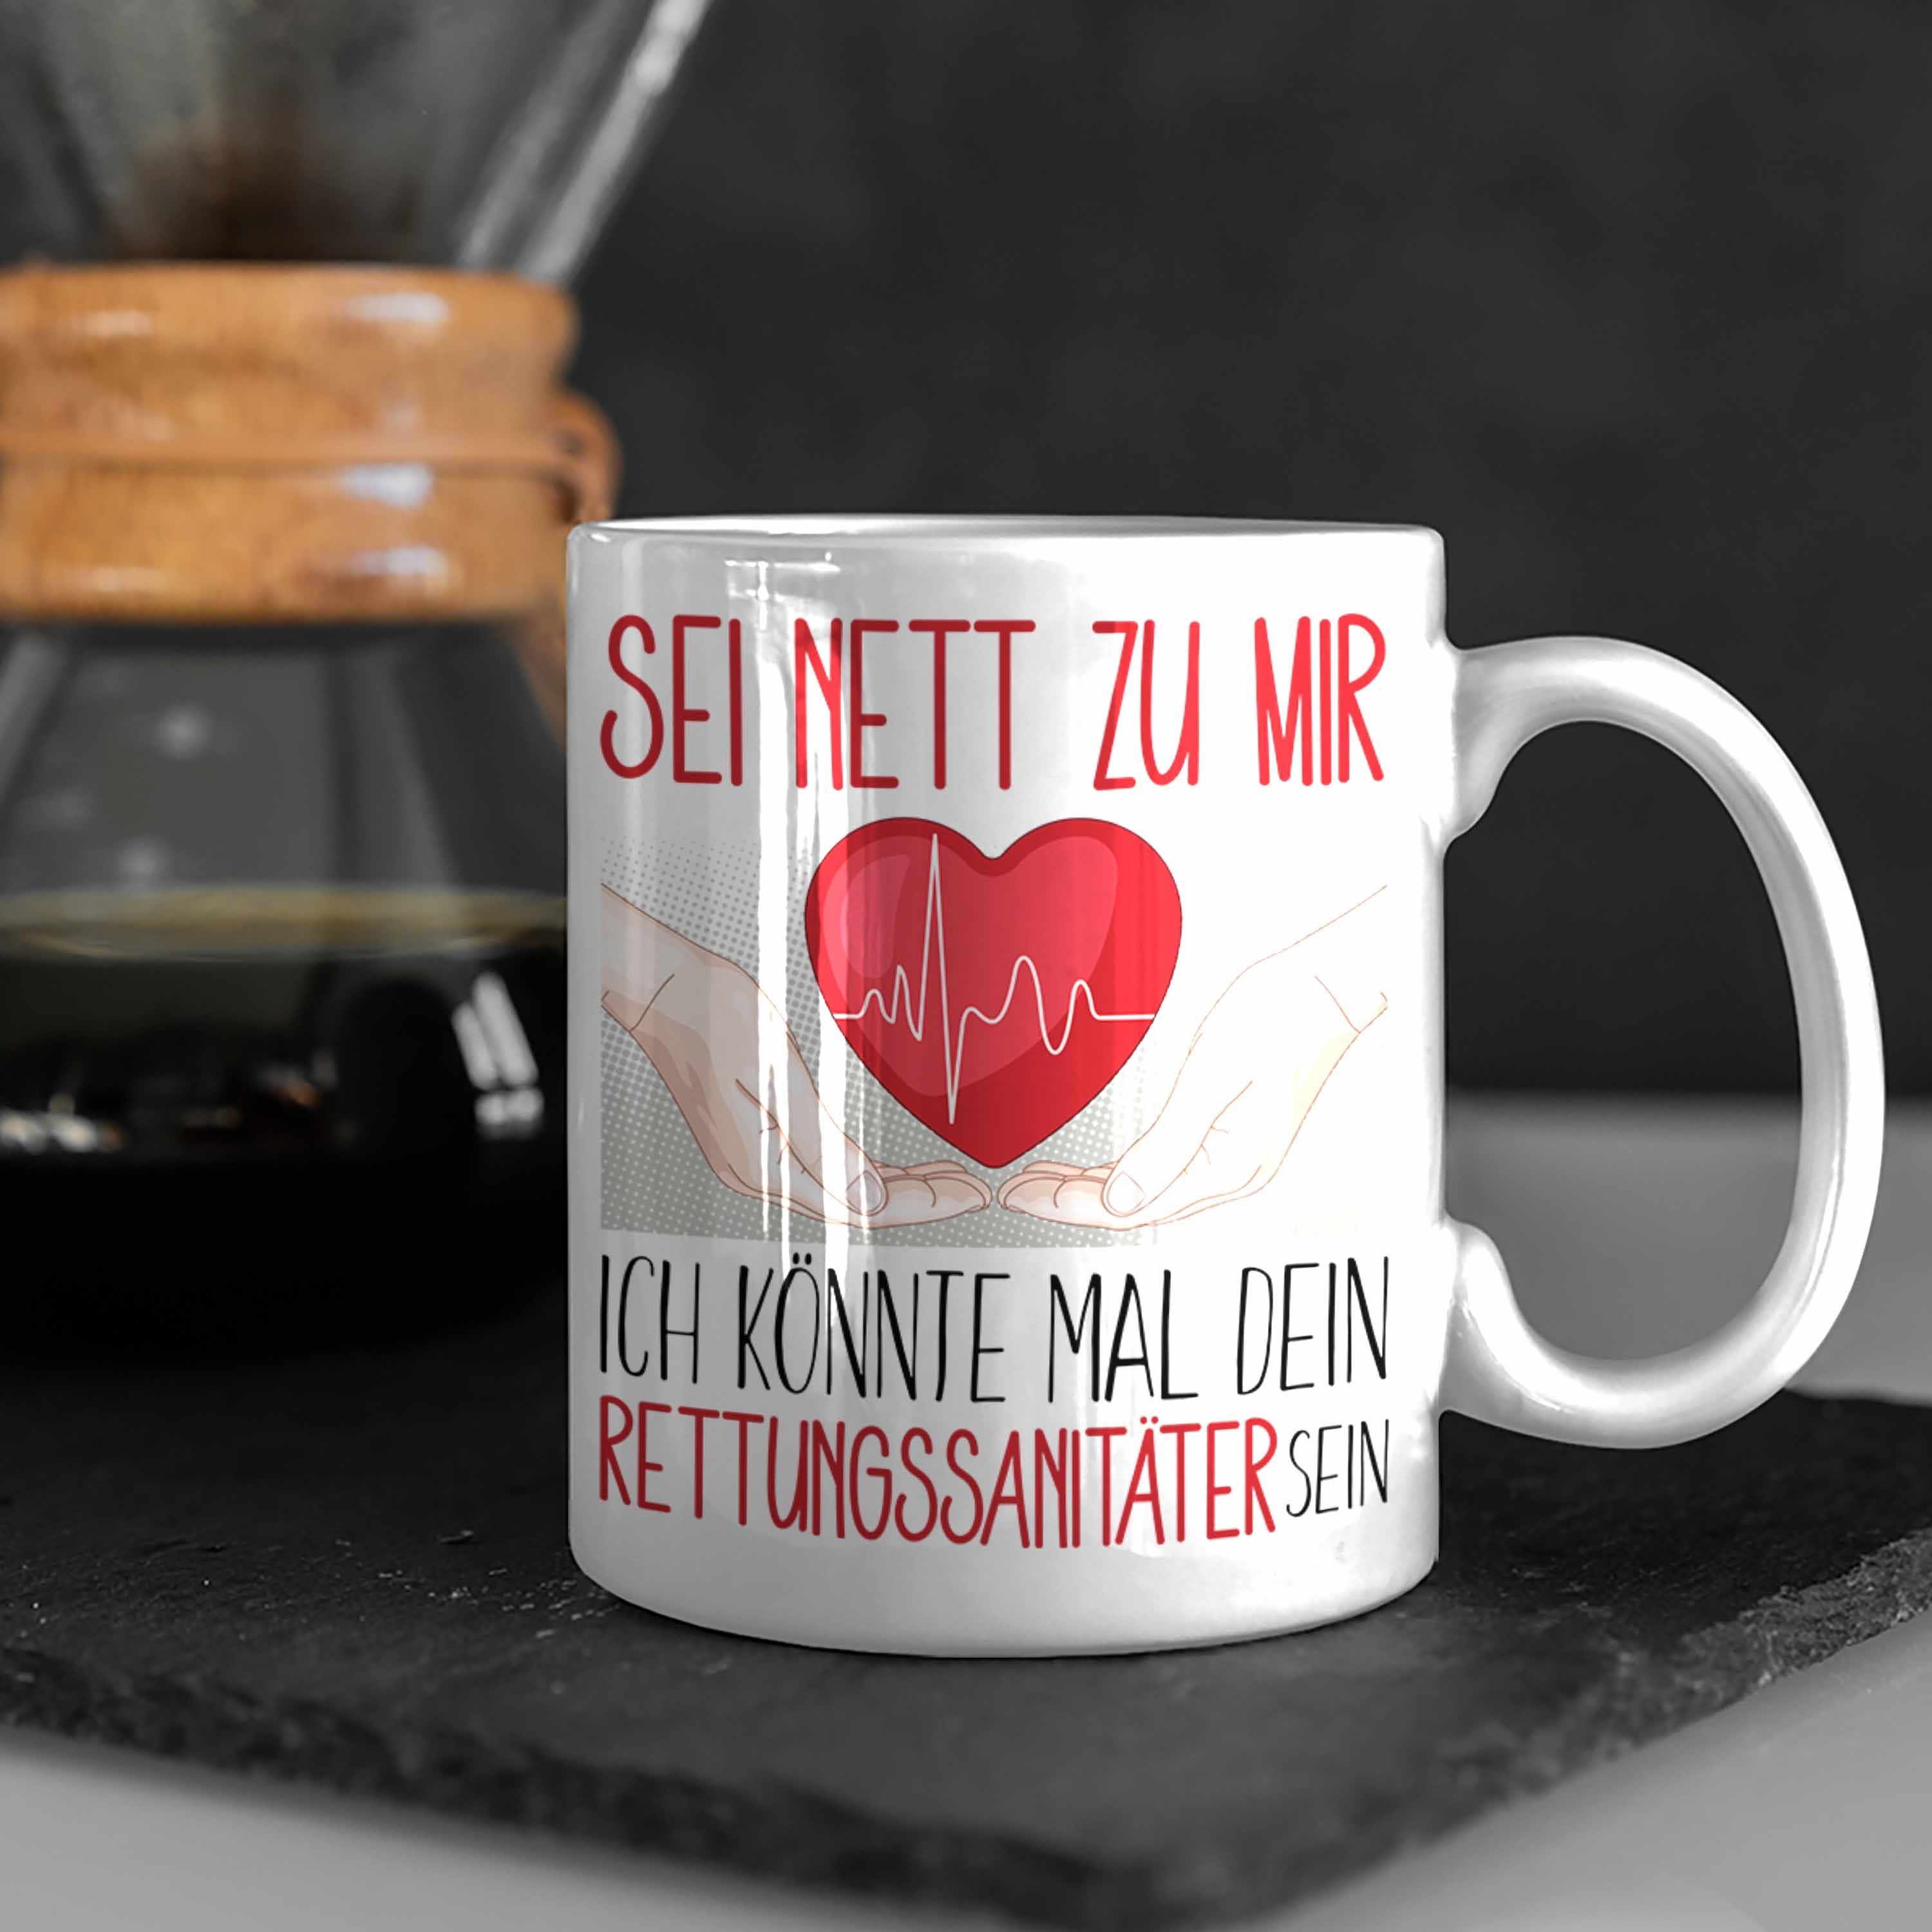 Studium Weiss Rettungsdienst Ausbildung Trendation Ges Rettungssanitäter Tasse Tasse Geschenk